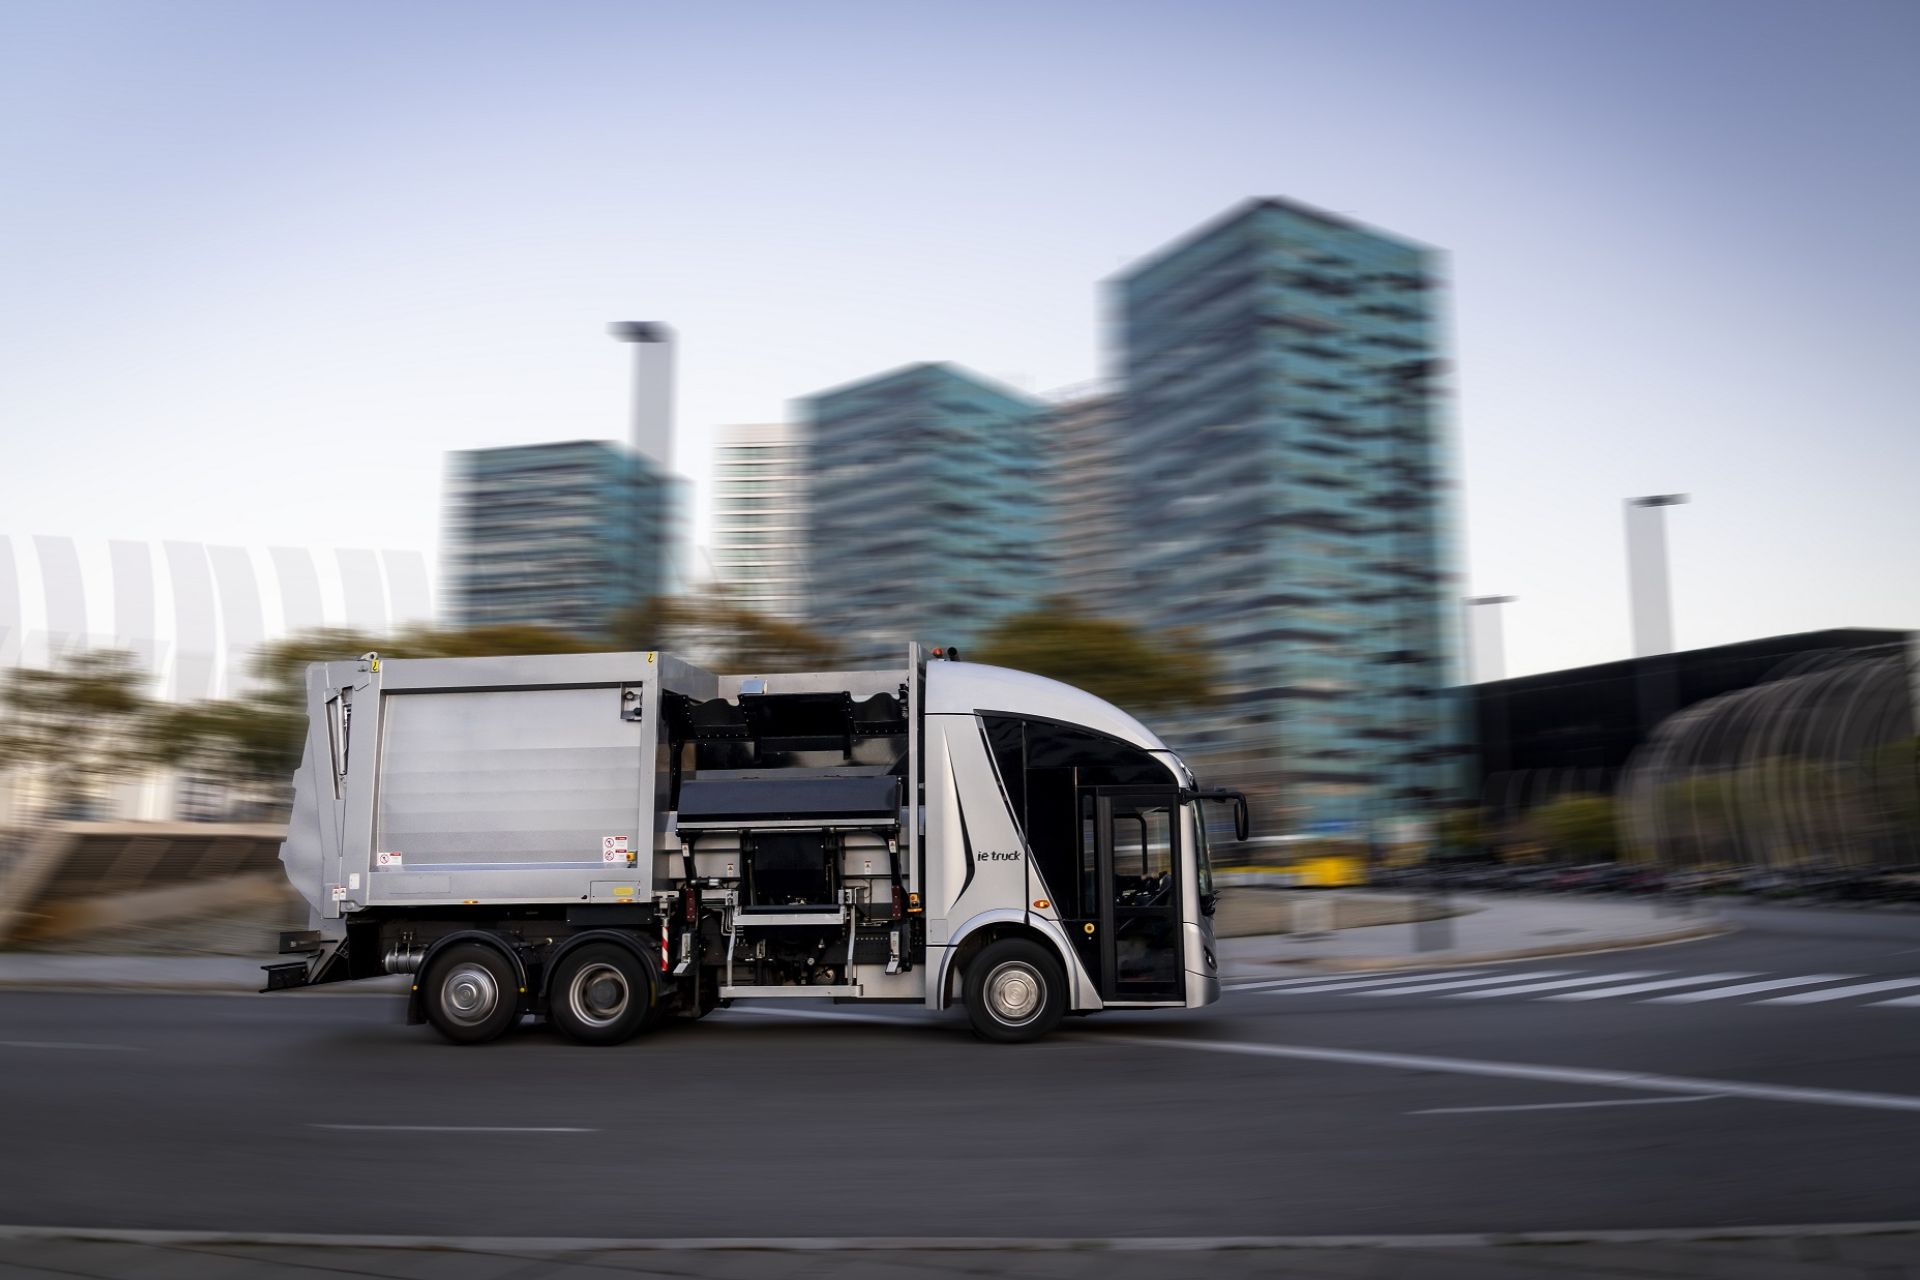 FCC Medio Ambiente et Irizar ont convenu de produire les 10 premiers camions électriques Irizar ie urban truck